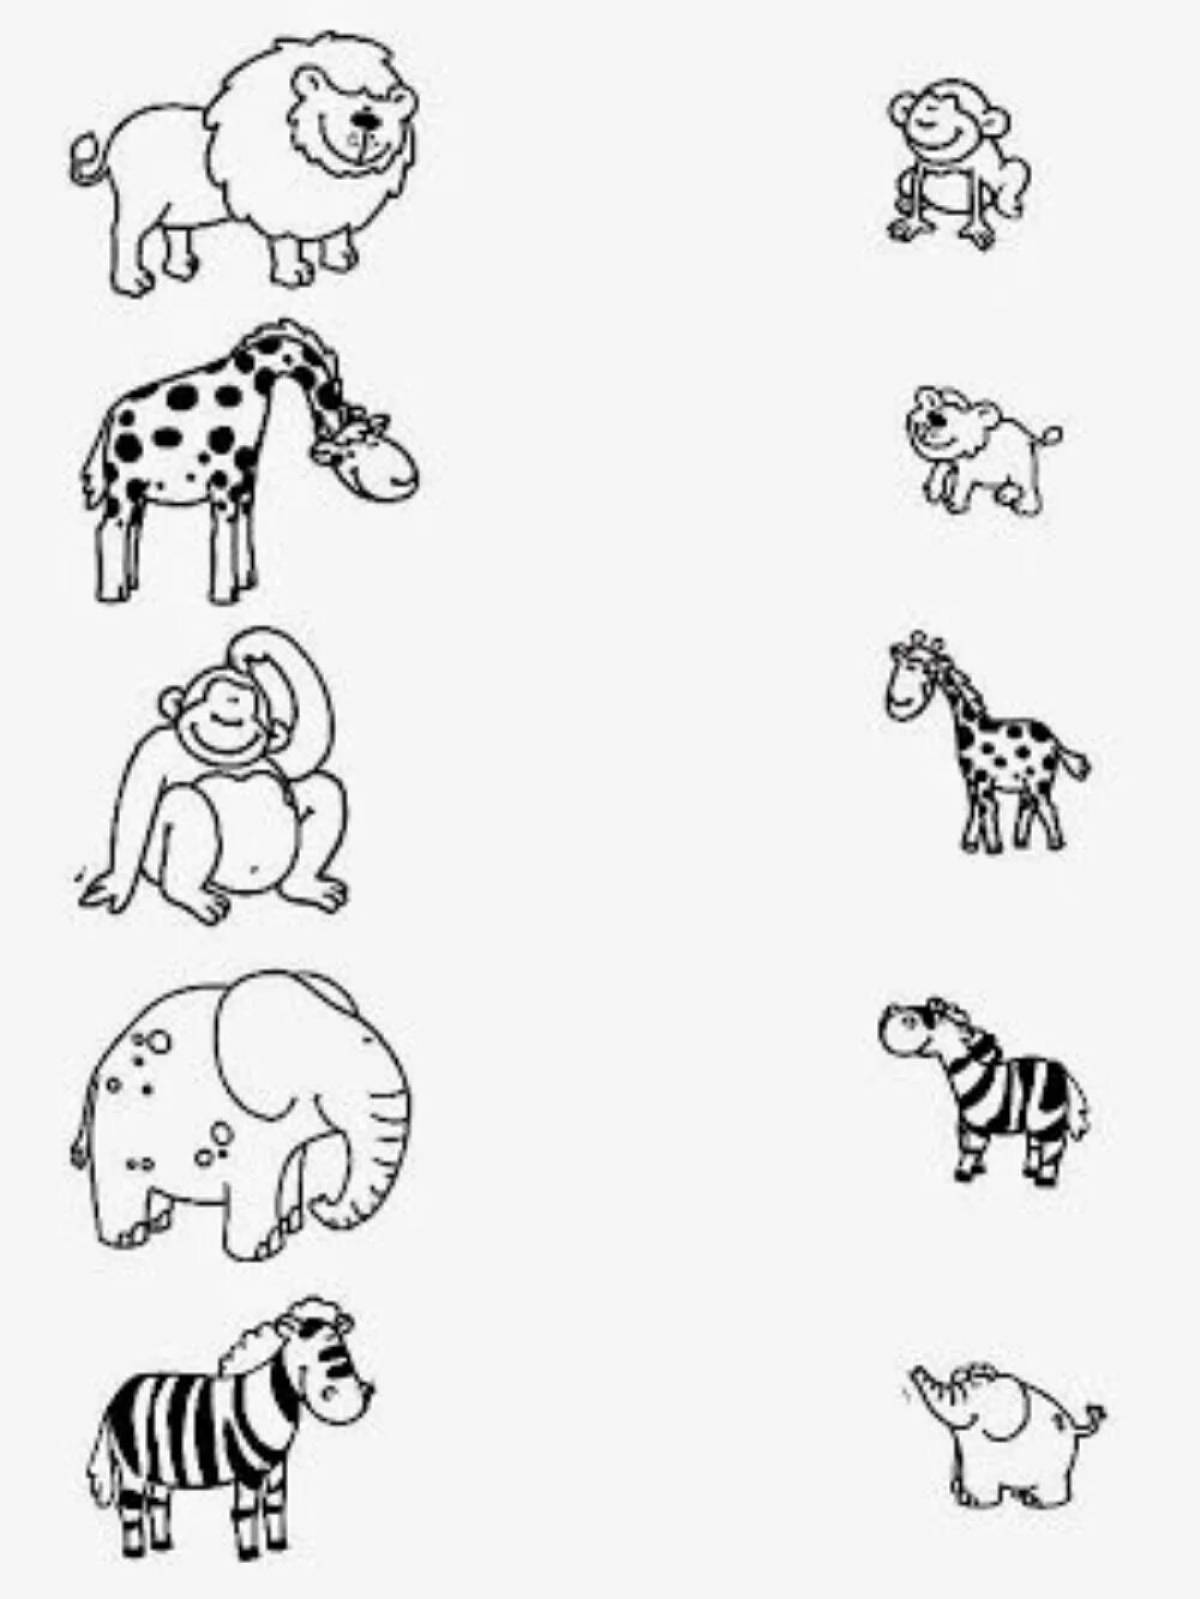 Задания для большой игры. Животные задания для дошкольников. Африканские животные задания для дошкольников. Рисунки животных для детей. Детеныши животных задания для дошкольников.